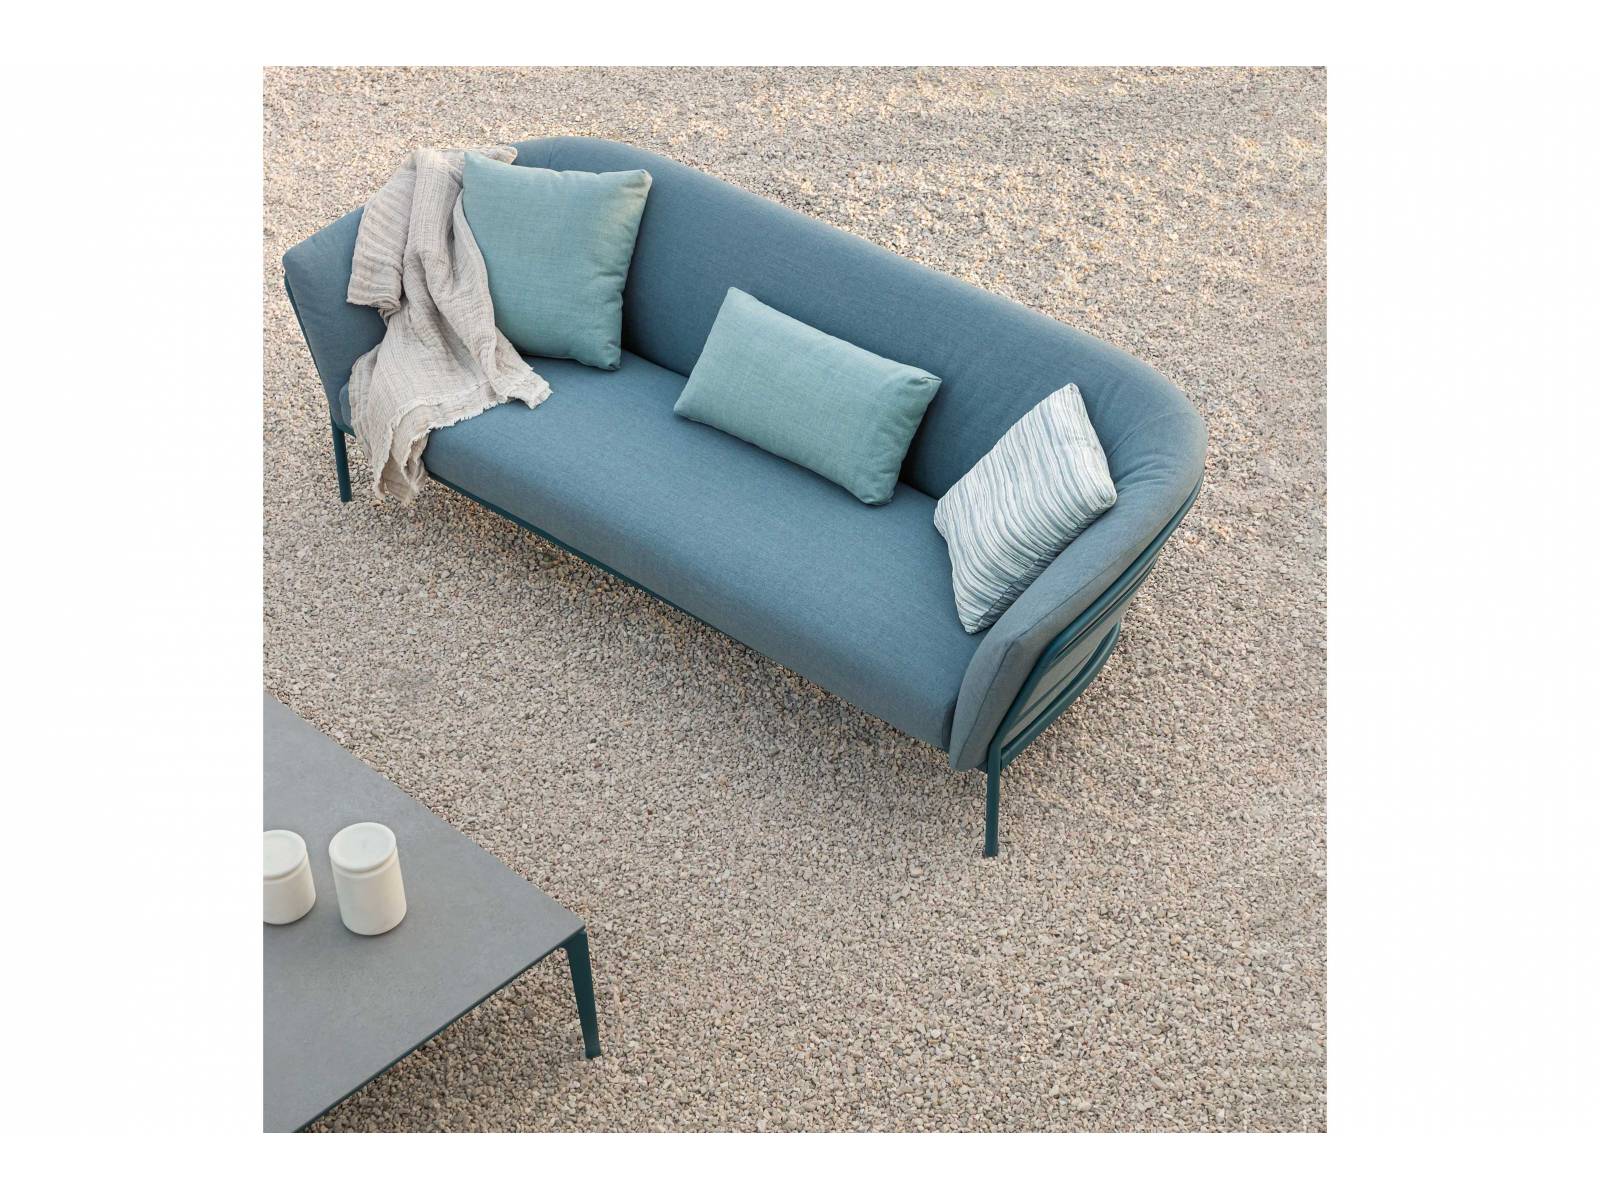 «Ria Soft» ist eine Sitzmöbelkollektion, die uns mit ihren geschwungenen Linien und weichen Polstern willkommen heisst. Die Farbtöne von Polster, Kissen und Gestell sind variabel und lassen sich in feinen Nuancen aufeinander abstimmen. Design: Alberto Lievore. FAST.